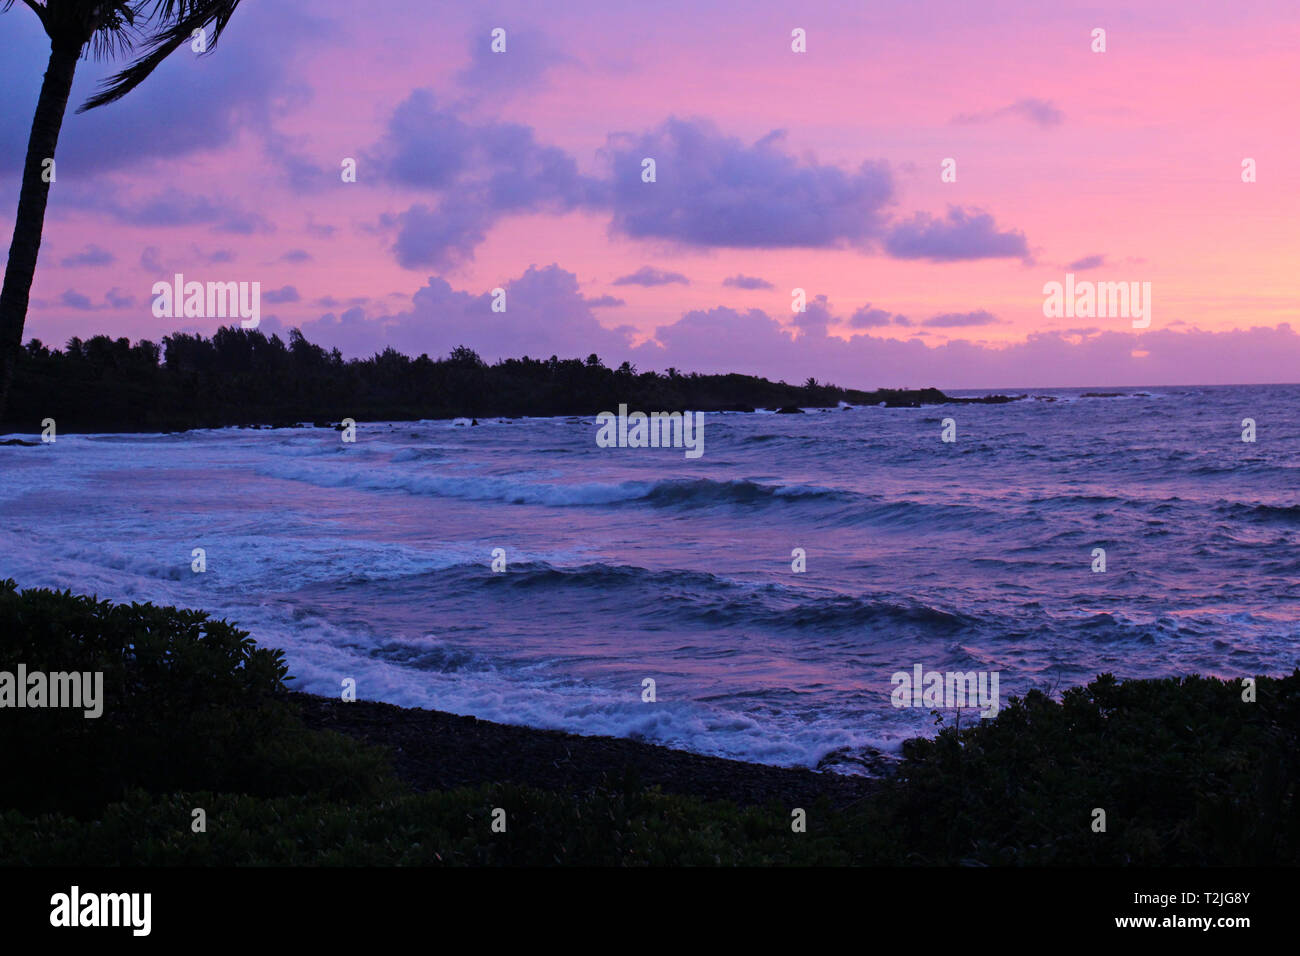 Einen traumhaften Sonnenuntergang in Violett, Rosa- und Blautönen aus dem Pazifischen Ozean von Hana Bay in Hana, Maui, Hawaii, USA widerspiegelt Stockfoto